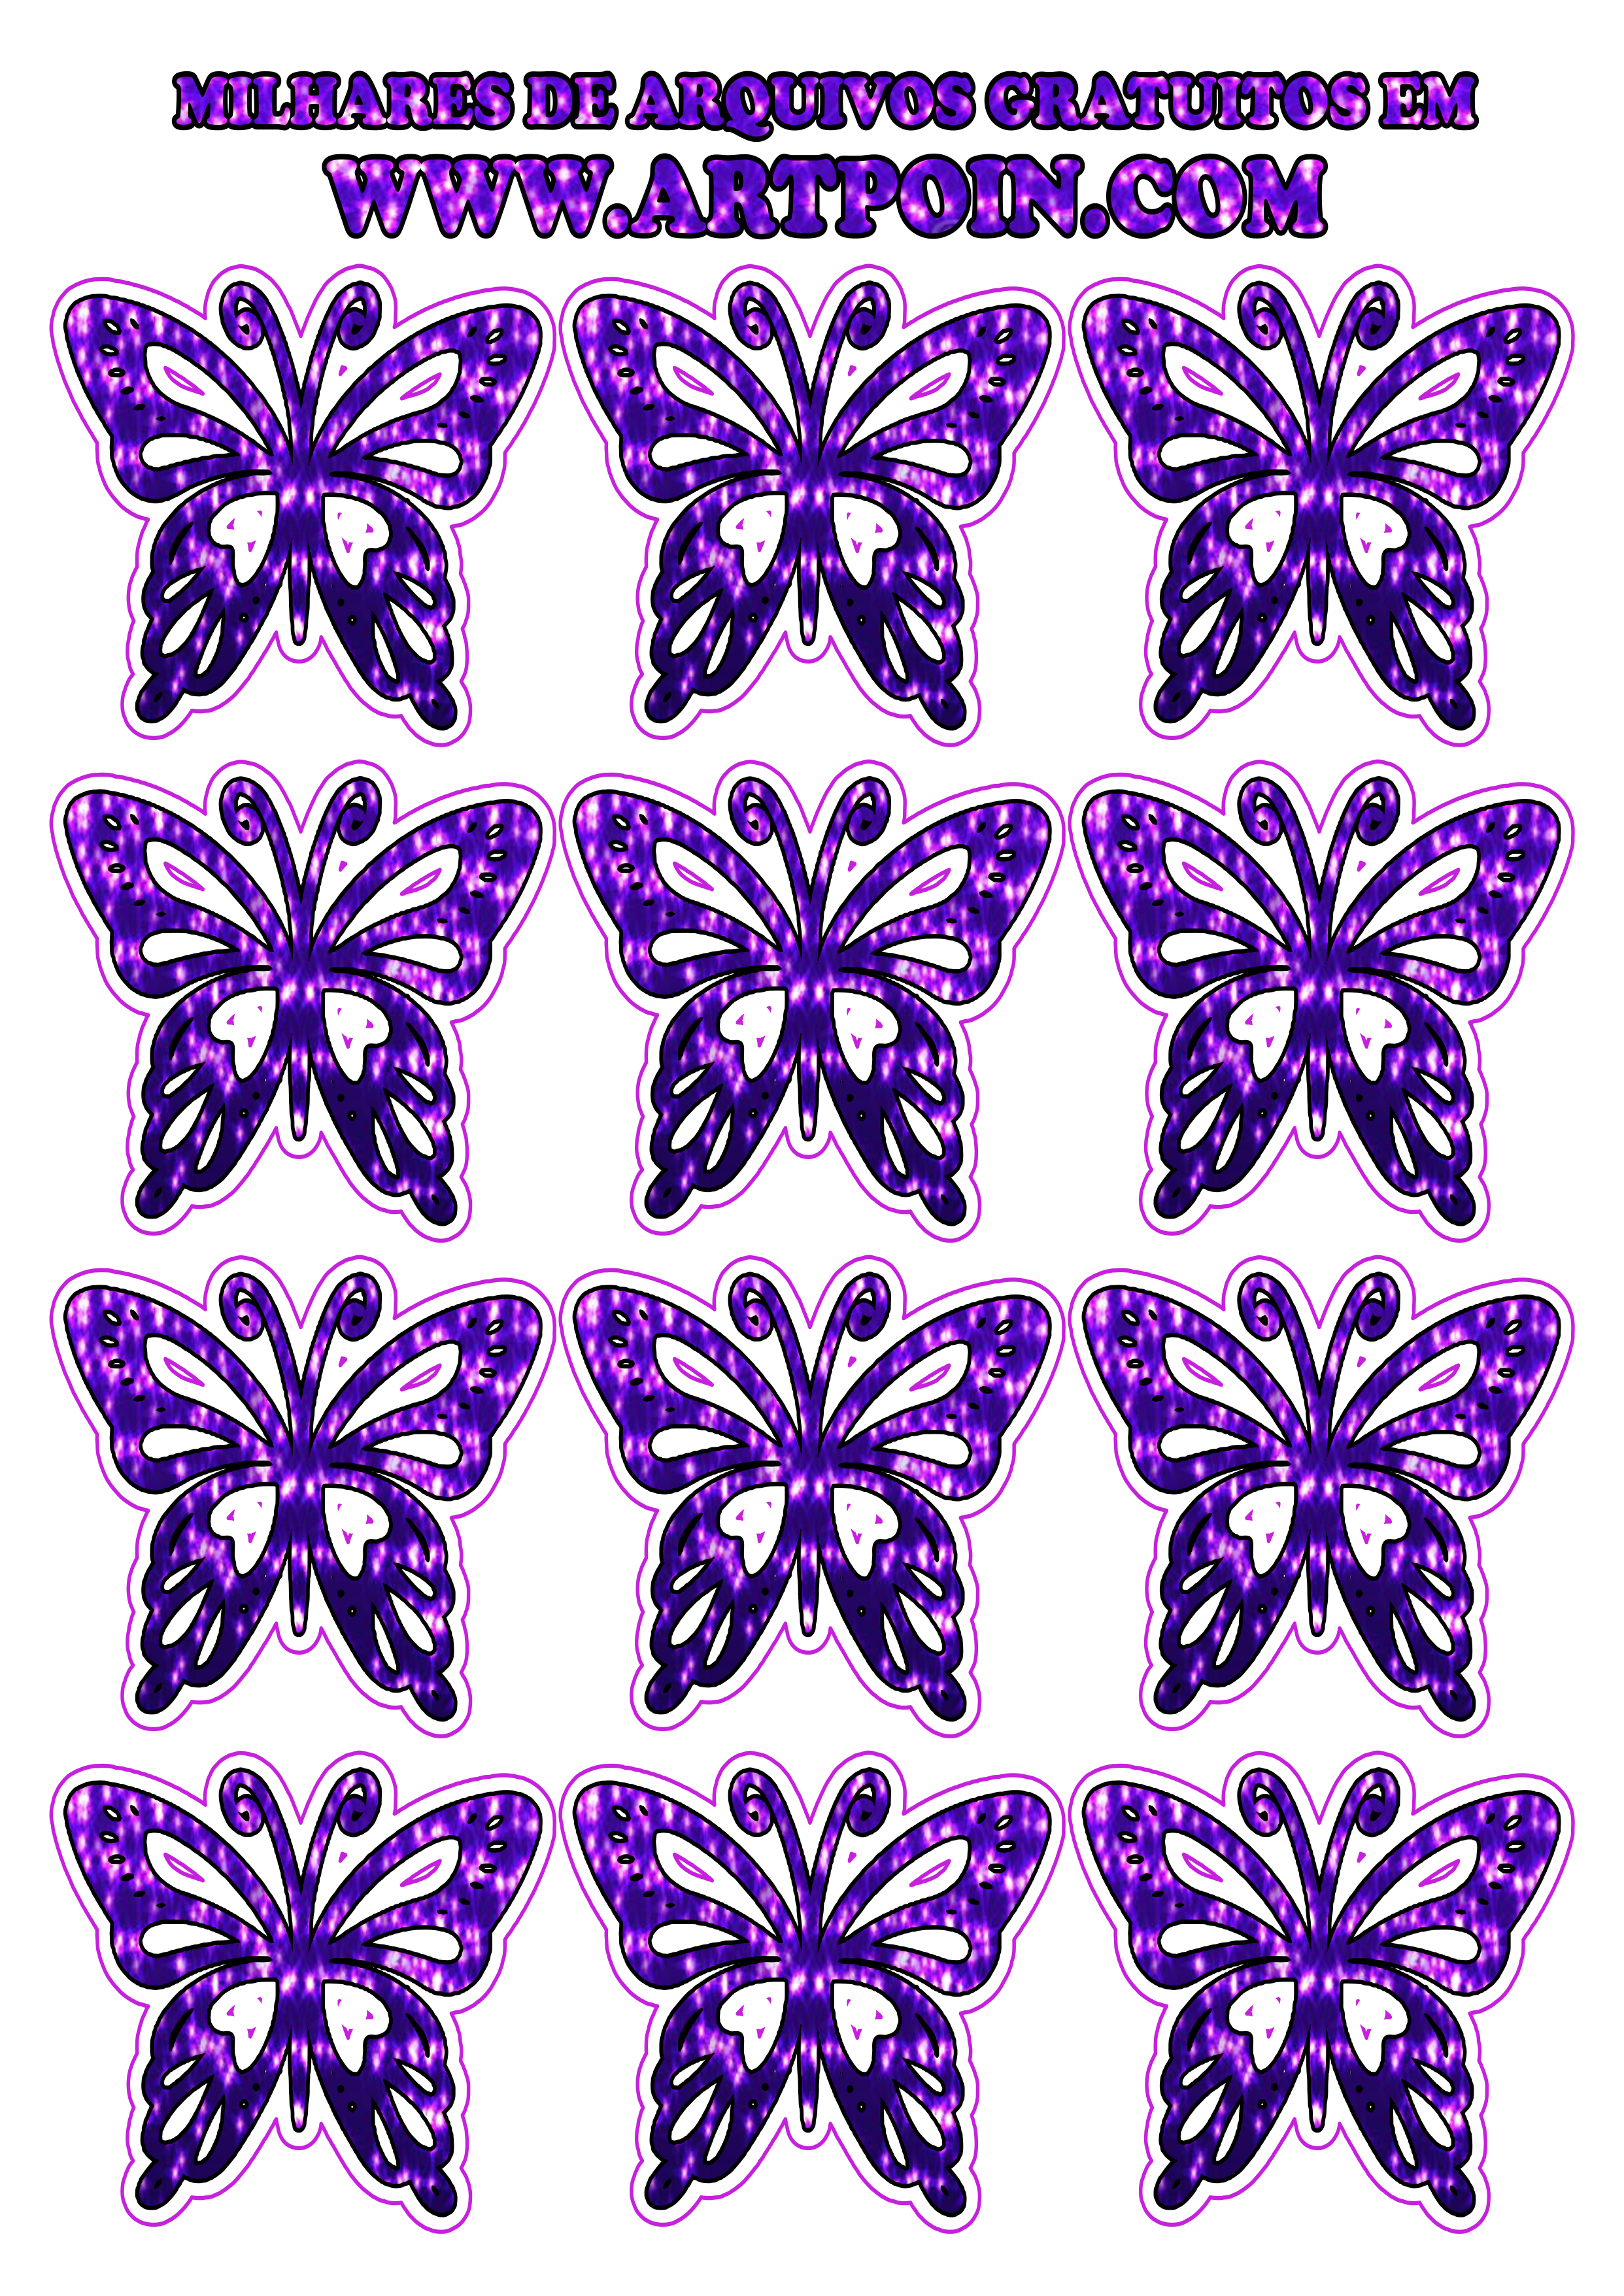 borboleta-dourada-com-lilas111111